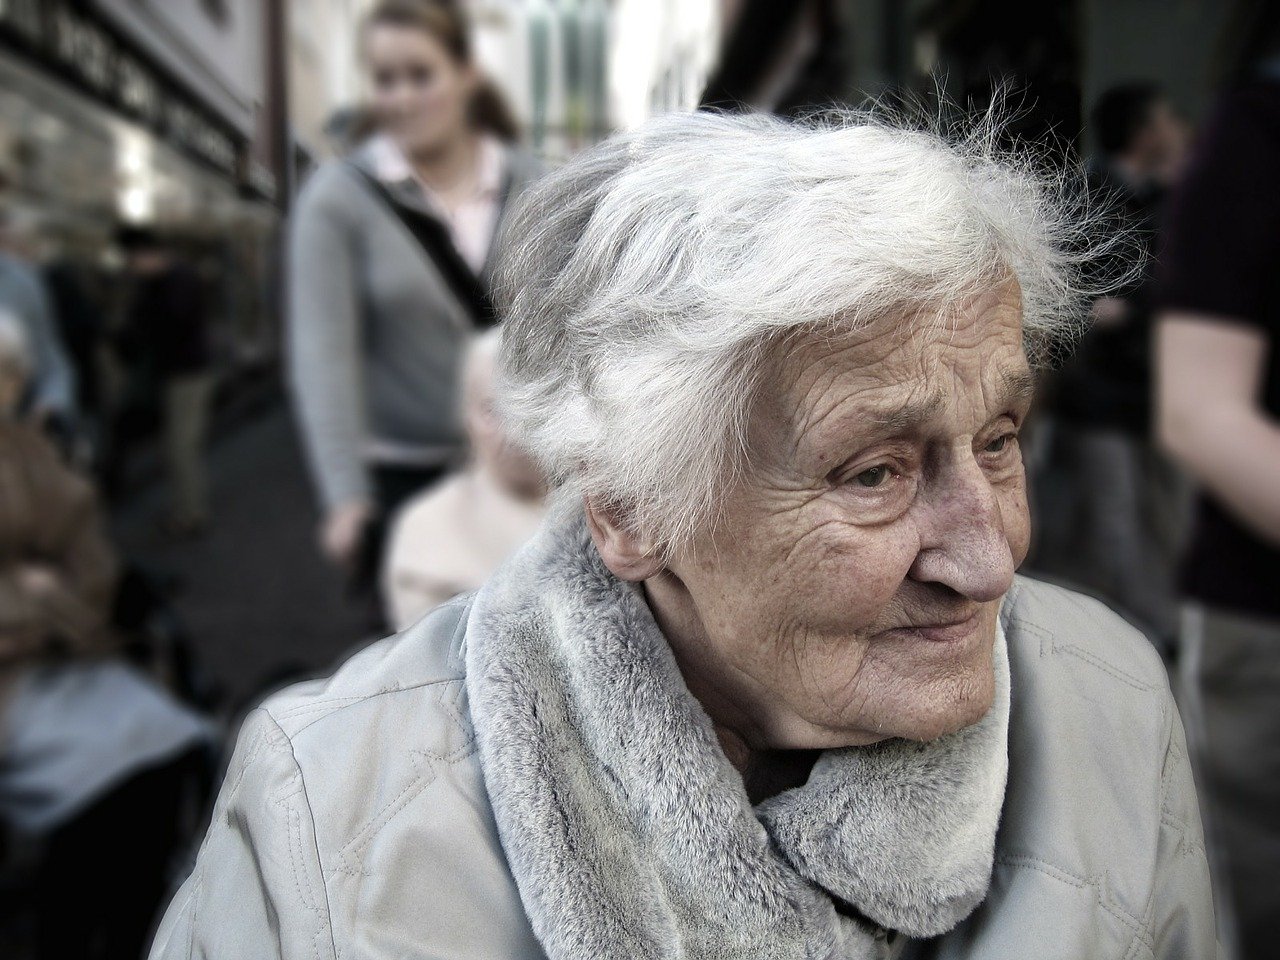 Vor allem ältere Personen sind oft auf Betreuung oder sogar 24-Stunden-Pflege angewiesen. Das Land Kärnten versucht nun alles, um die Pflegeversorgung in der aktuellen Lage zu sichern.